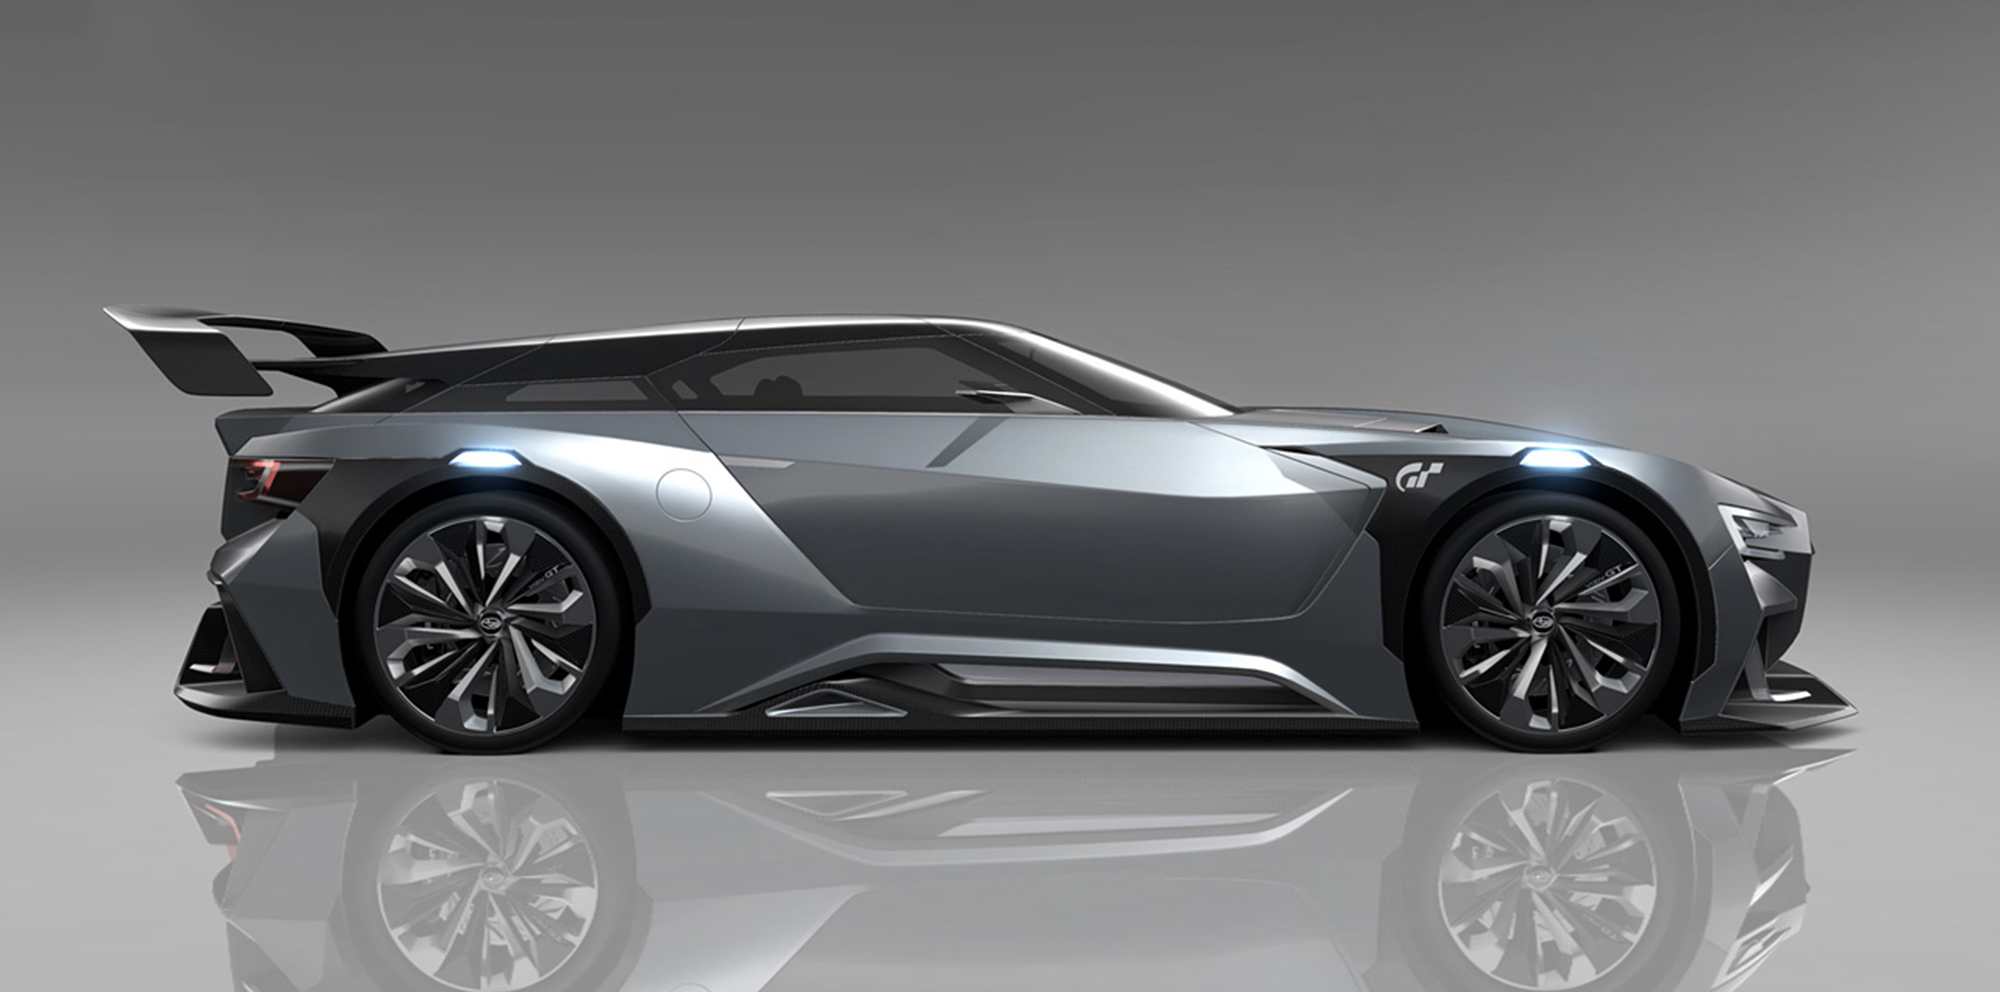 Subaru Viziv GT Vision Gran Turismo concept will be 